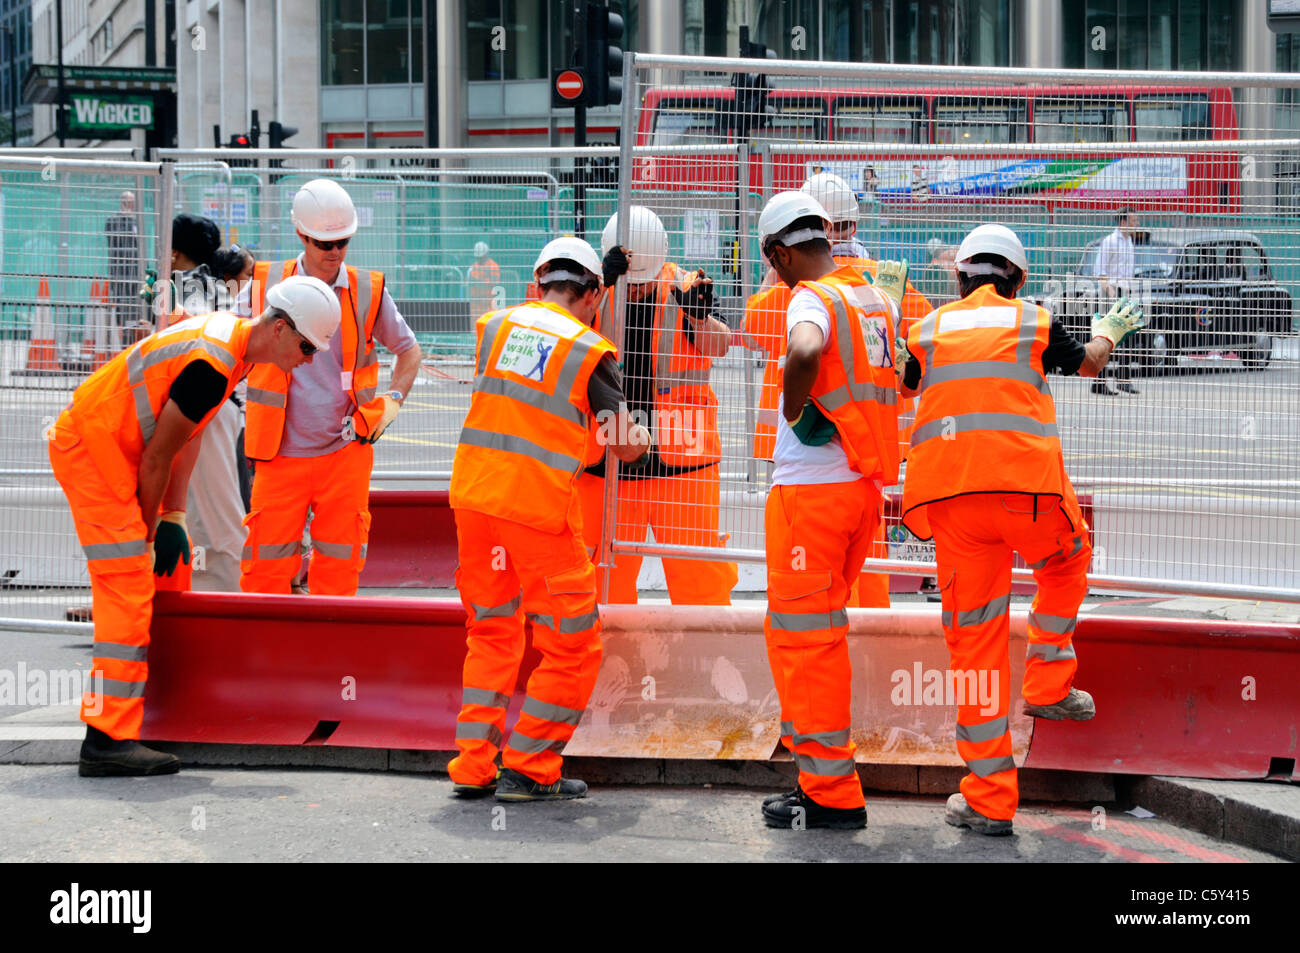 Lavoro di squadra lavorare insieme molte mani rendono il lavoro leggero sette operai abbigliamento ad alta visibilità hanno messo recinzioni in acciaio lavori stradali a Victoria Londra Inghilterra Regno Unito Foto Stock